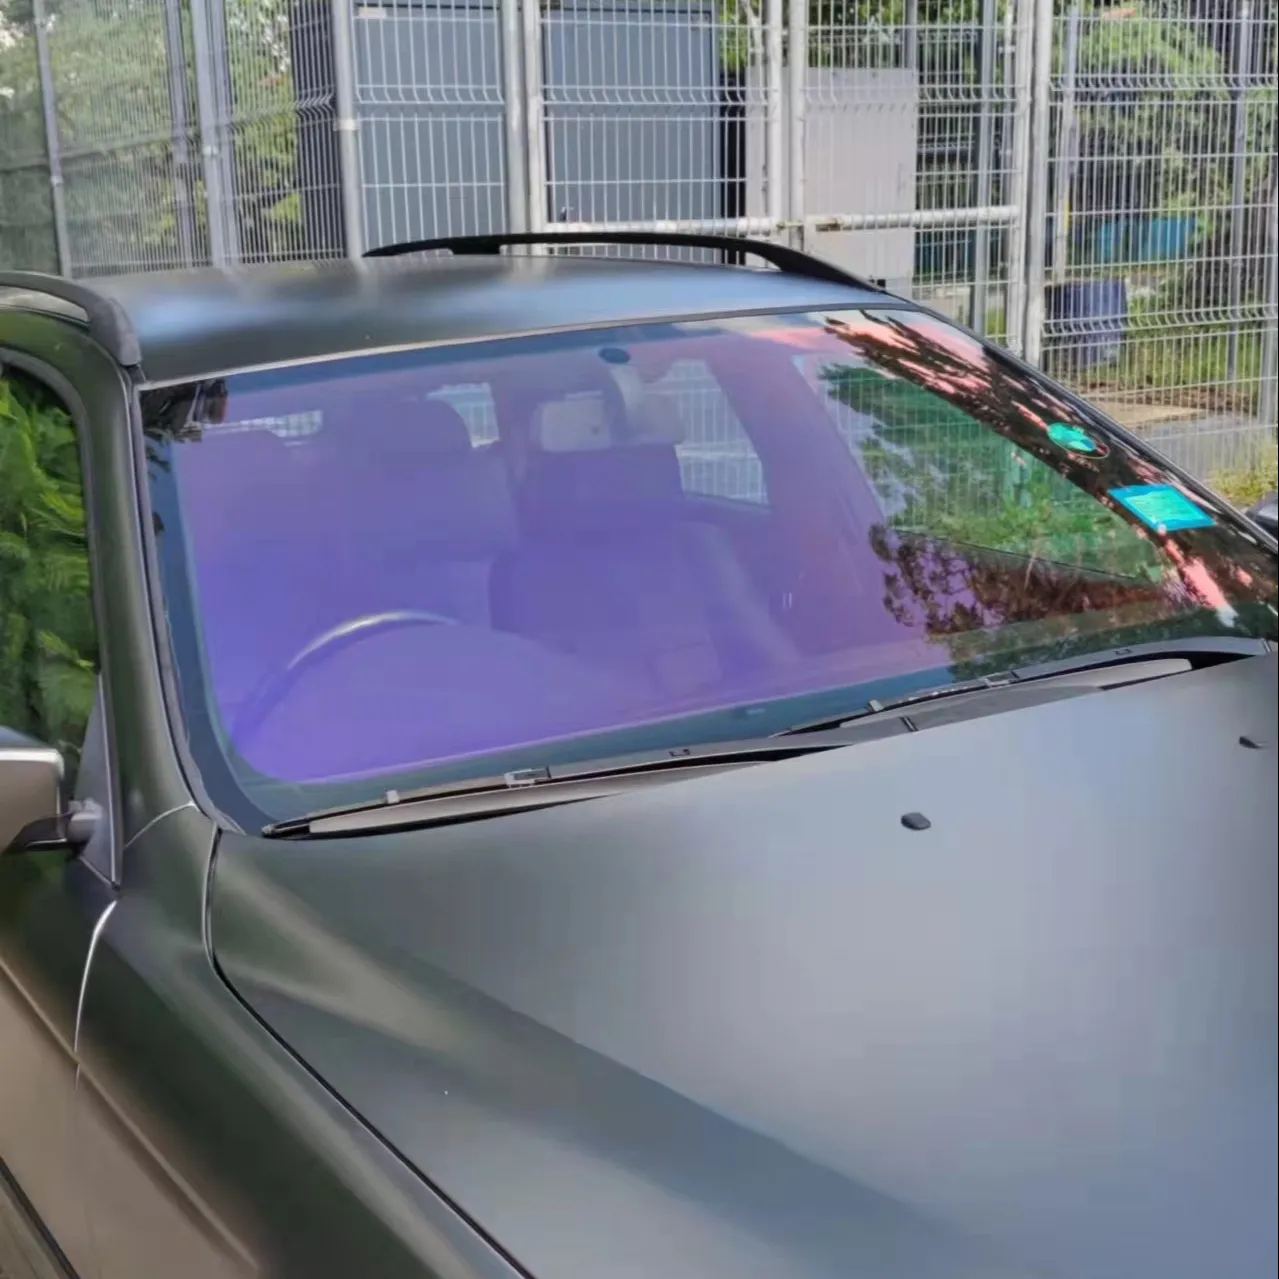 Цветной Хамелеон для окон автомобиля, ТИНТ, фотохромная пленка для окон автомобиля с ультравидным эффектом, пленка для окон автомобиля с защитой от царапин, фиолетовая пленка-хамелеон